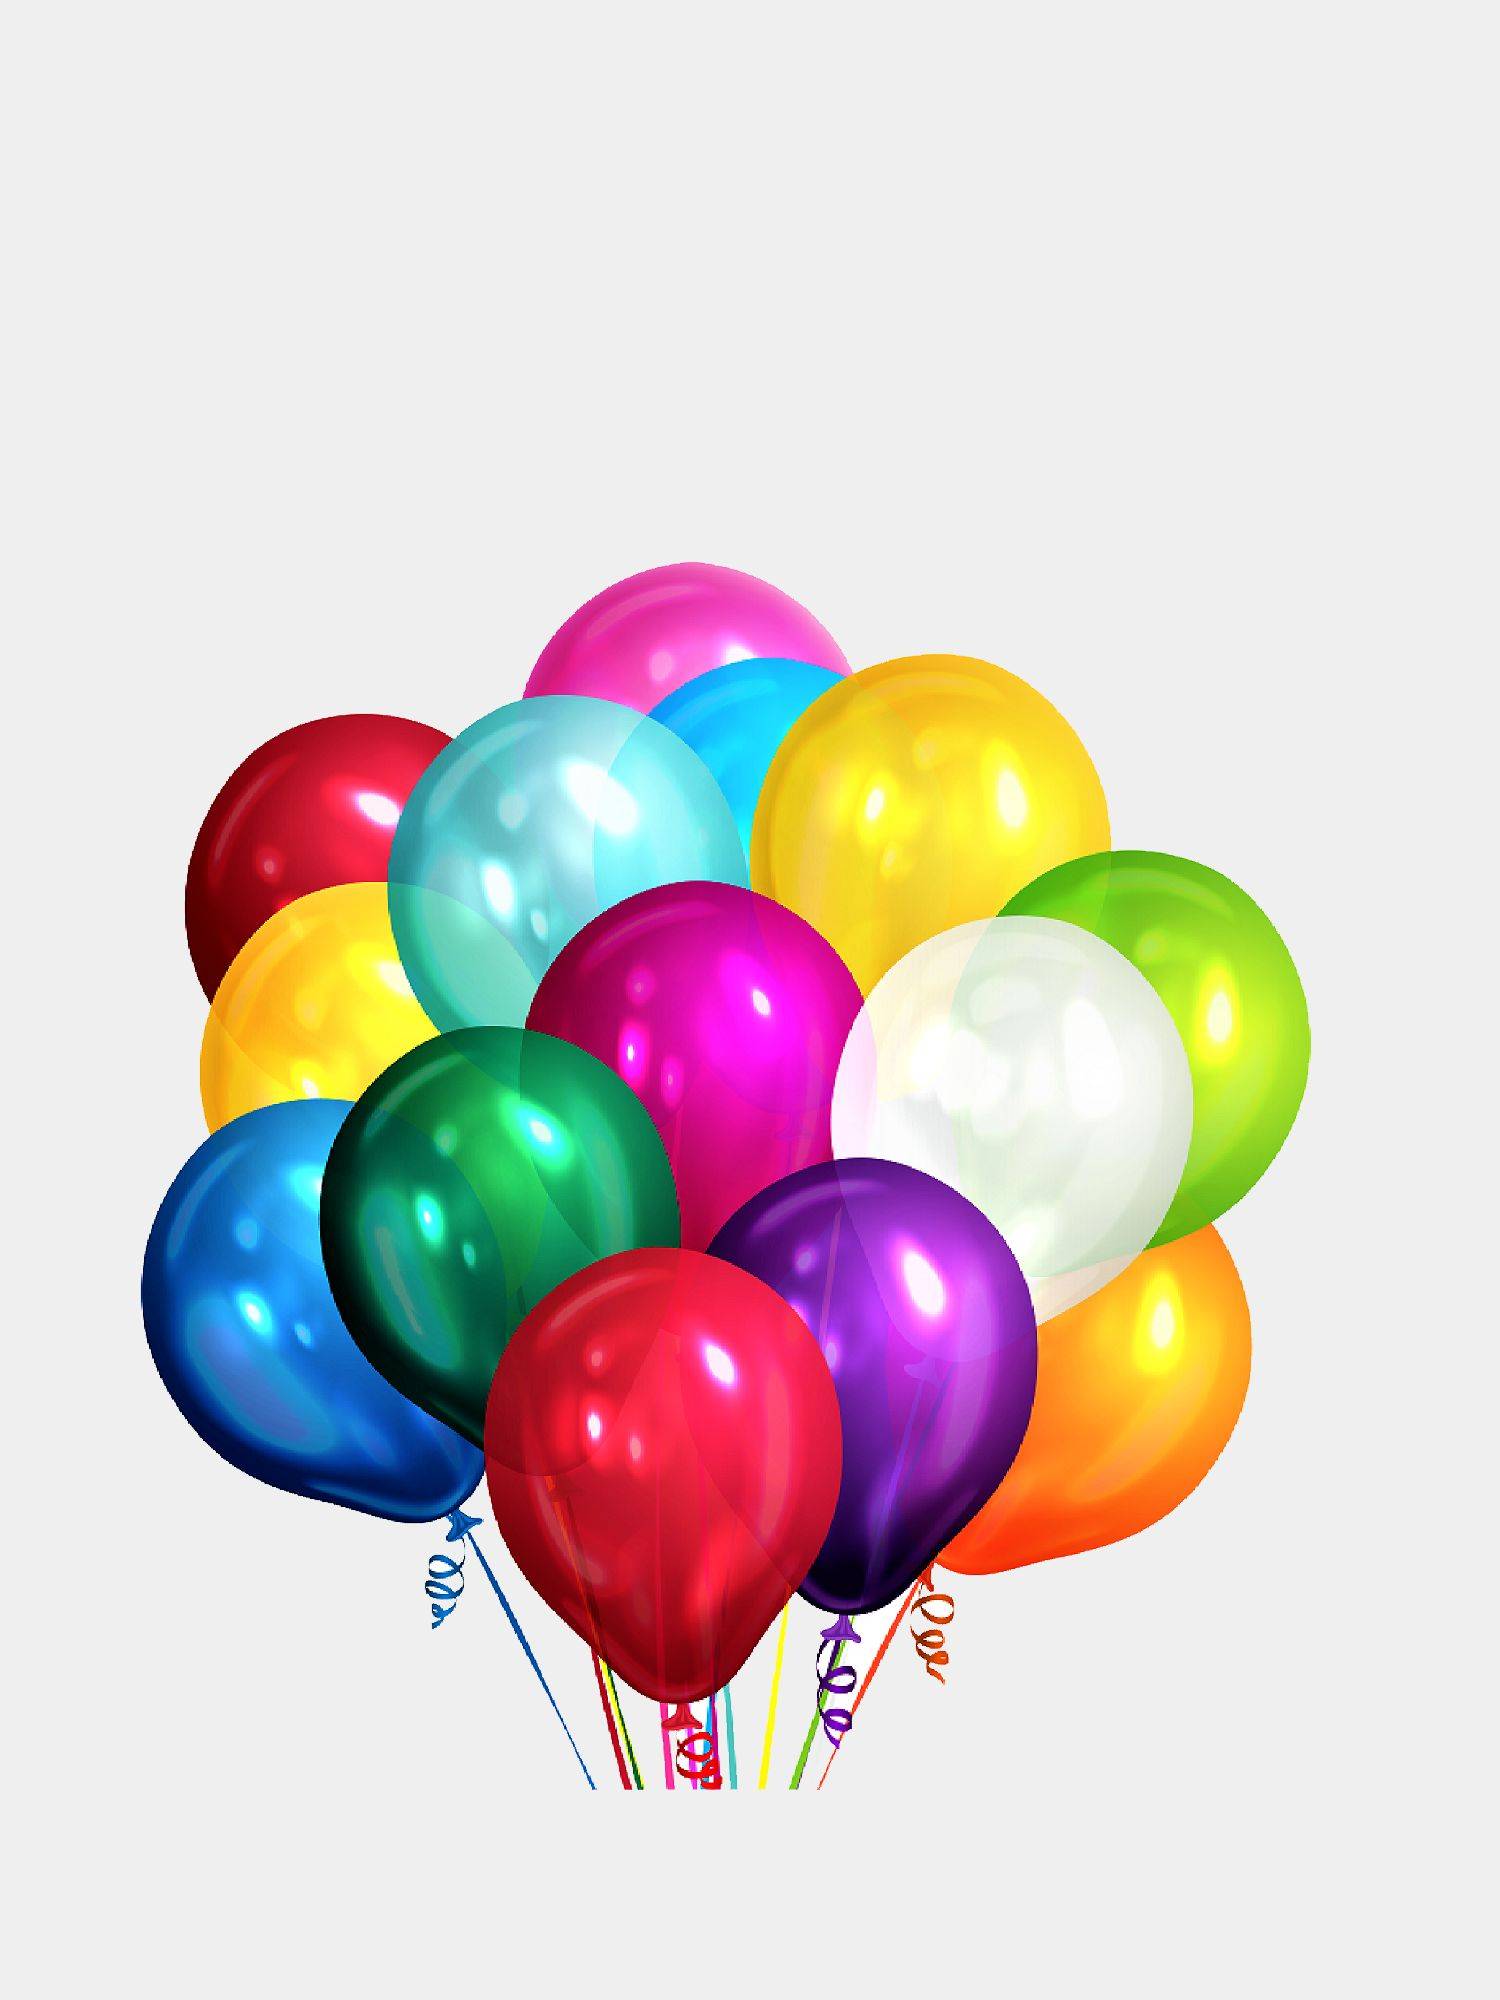 Описание воздушных шаров. Воздушный шарик. Разноцветные воздушные шары. Разноцветные шары гелиевые. Шары без фона.